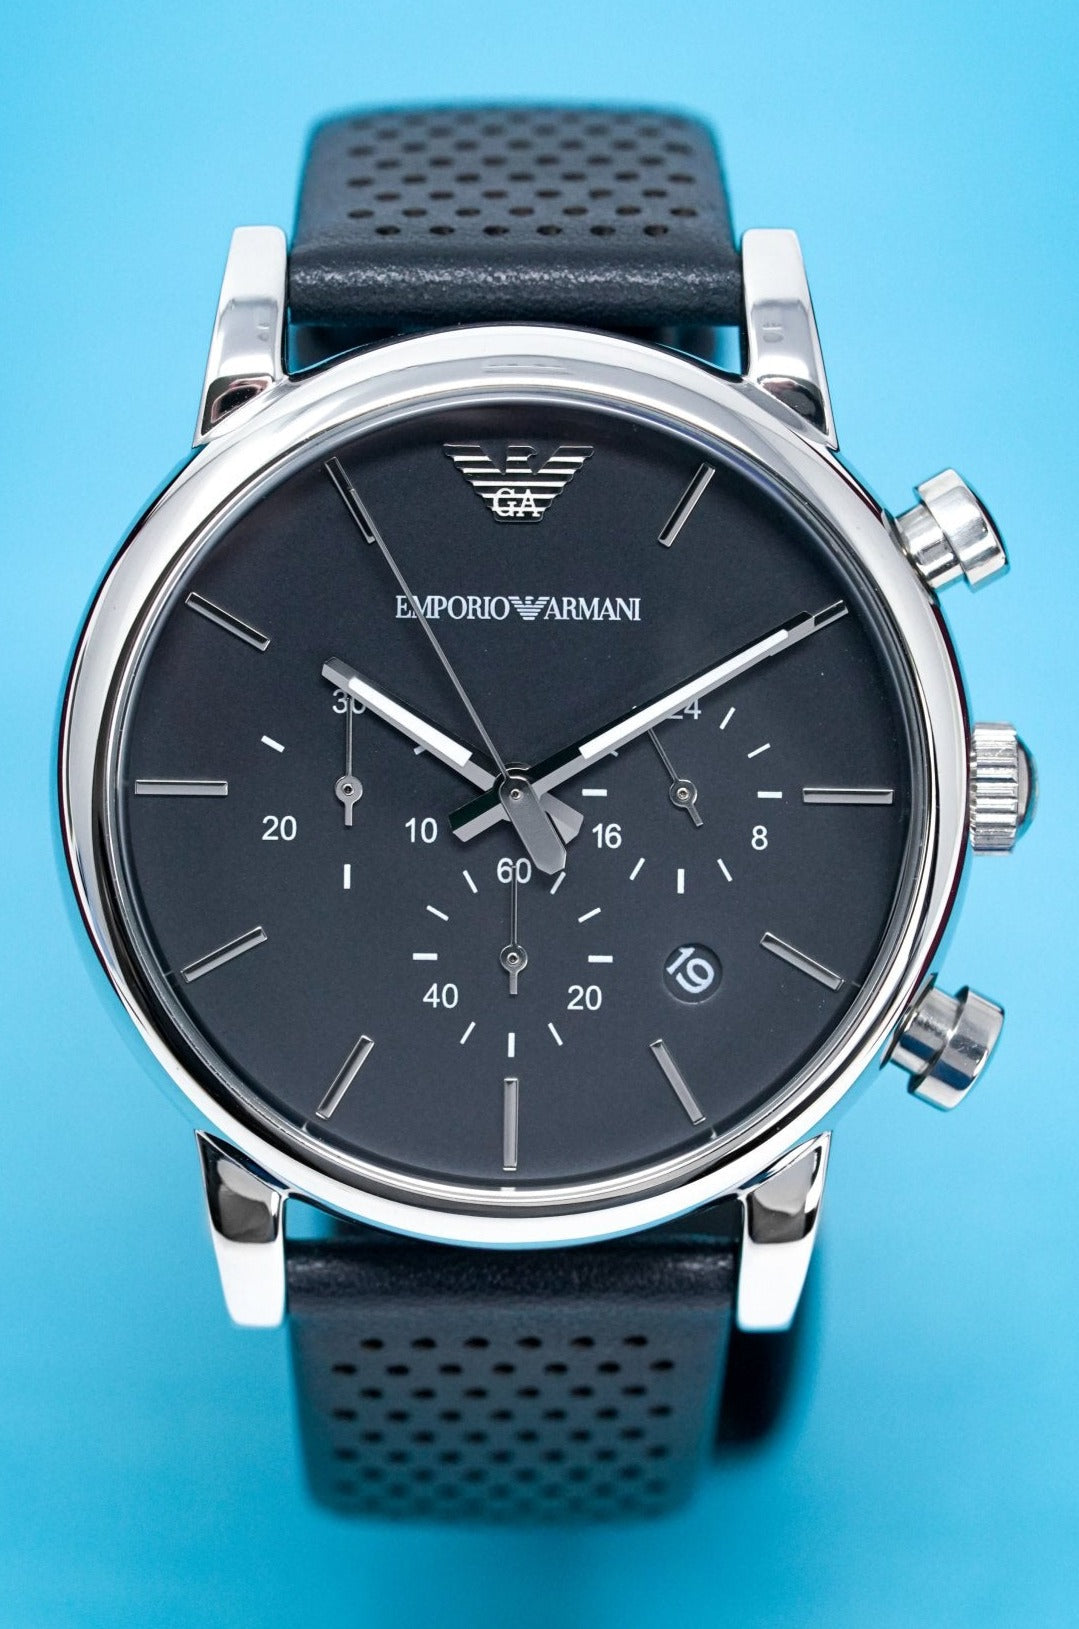 Emporio Armani Luigi Watches | Watches & Crystals